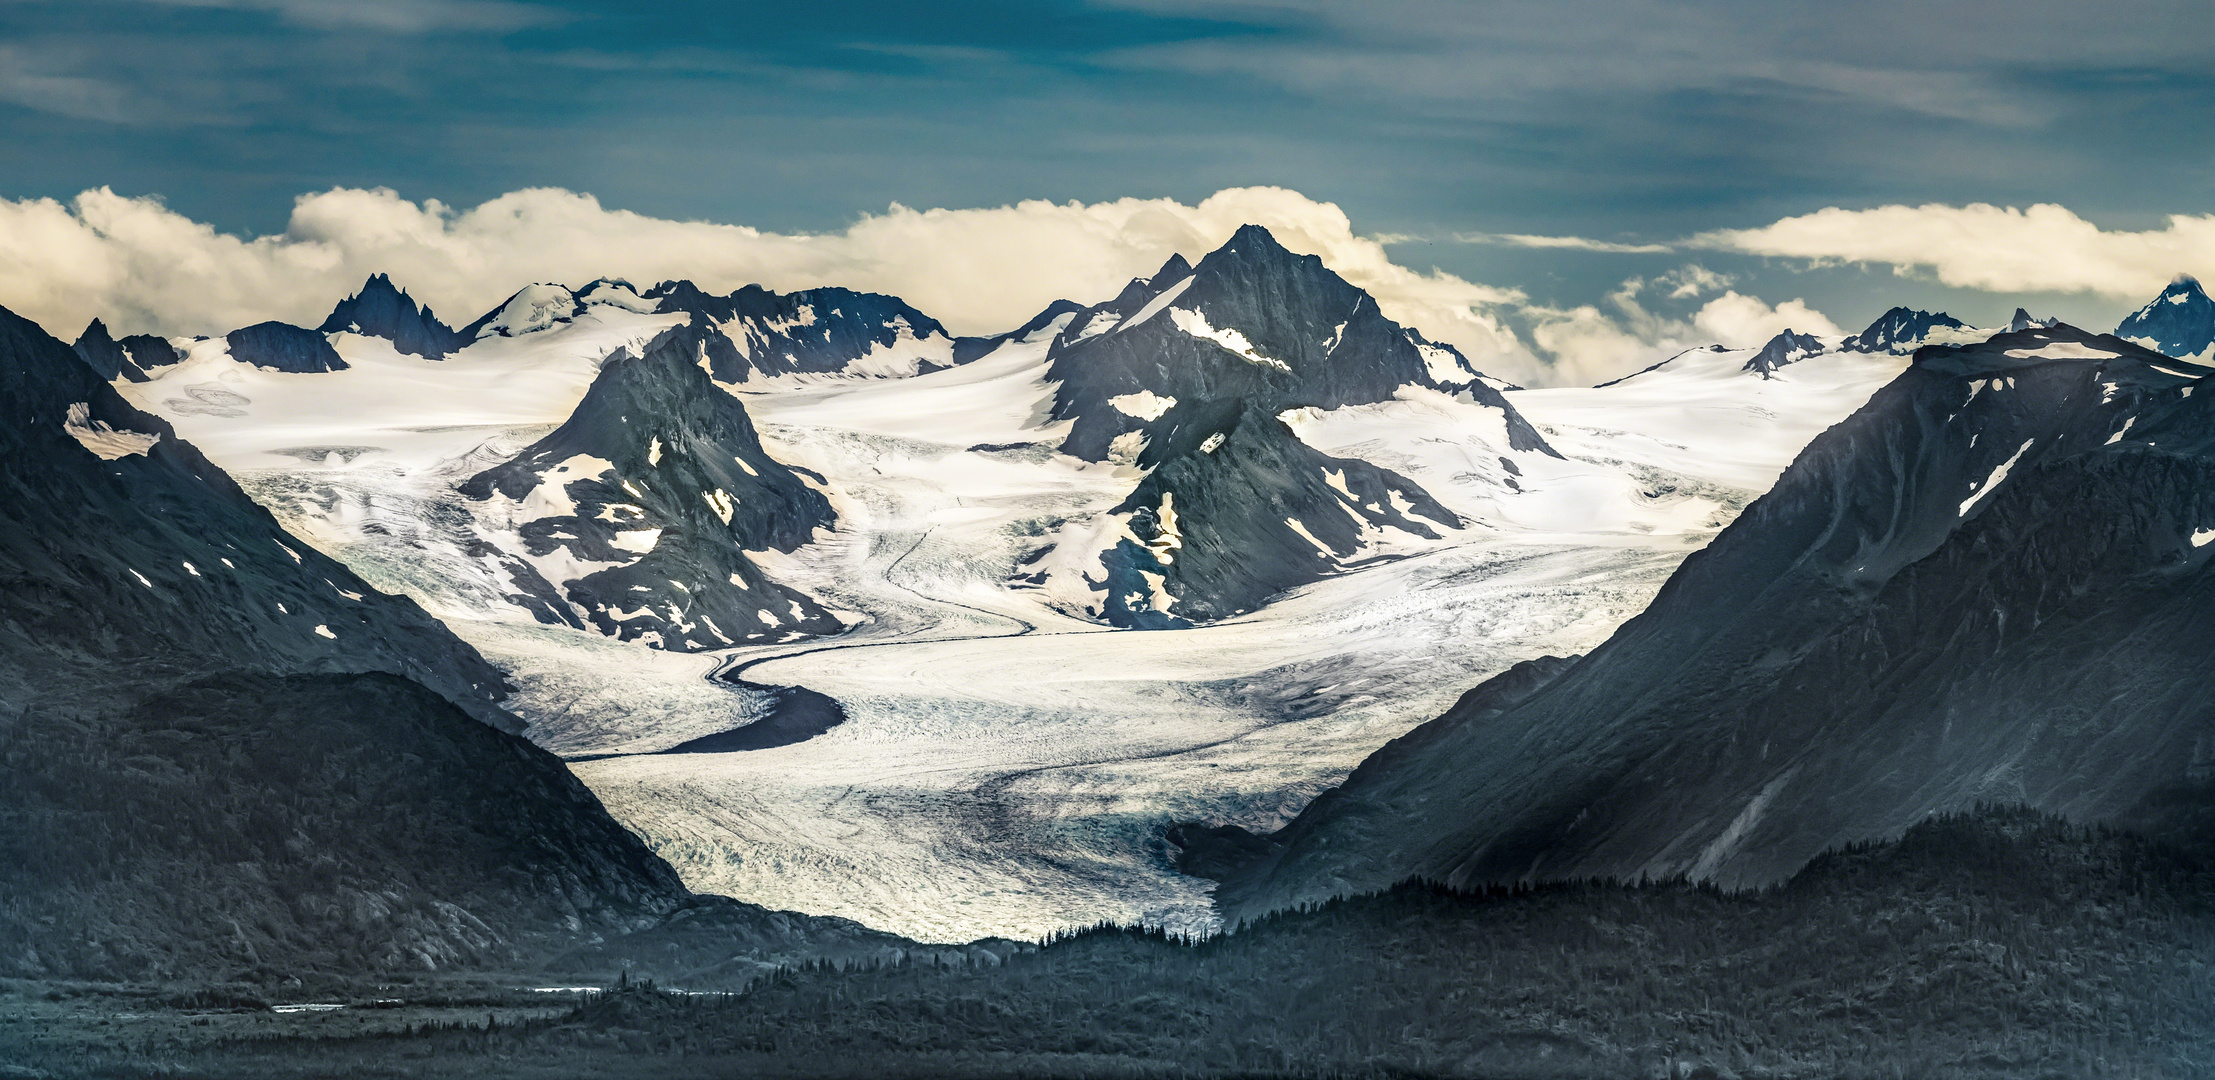 Abendlicher Blick vom Homer Spit auf einige Gletscher der Alaska Range